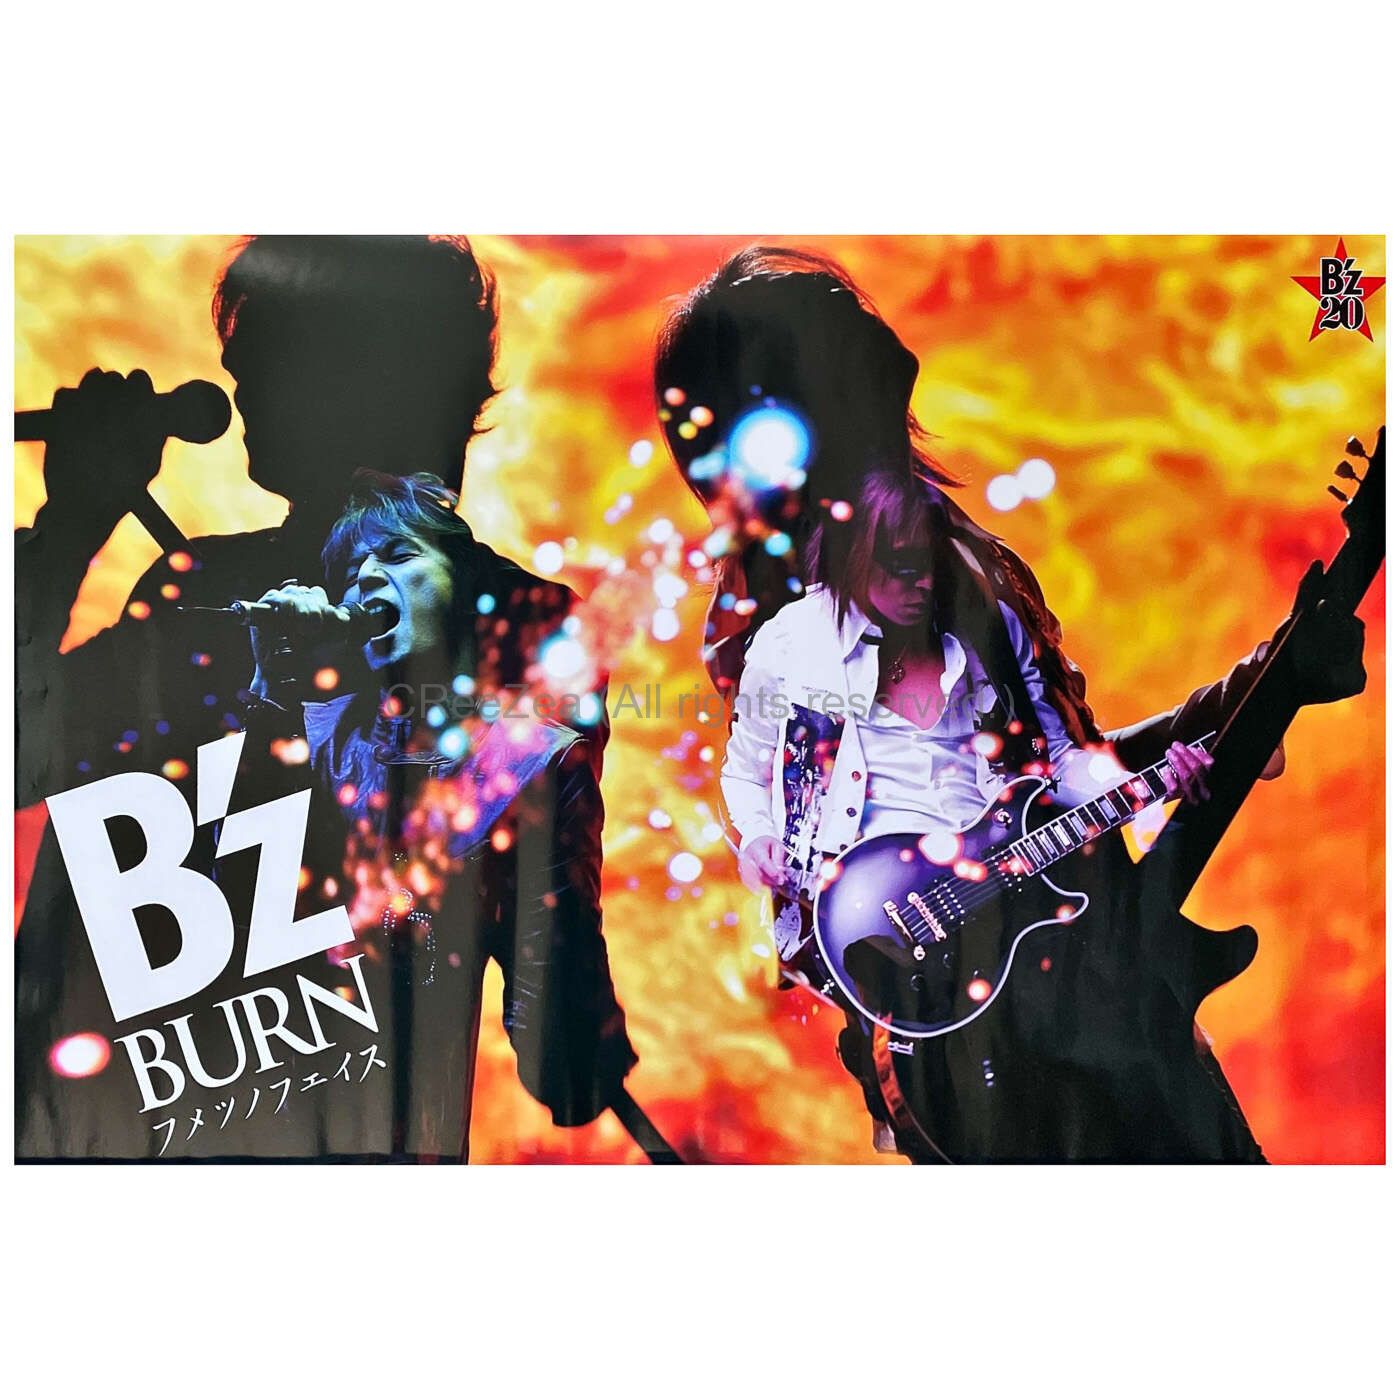 【買取】B'z(ビーズ) ポスター BURN -フメツノフェイス- 特典 || アーティストショップJP